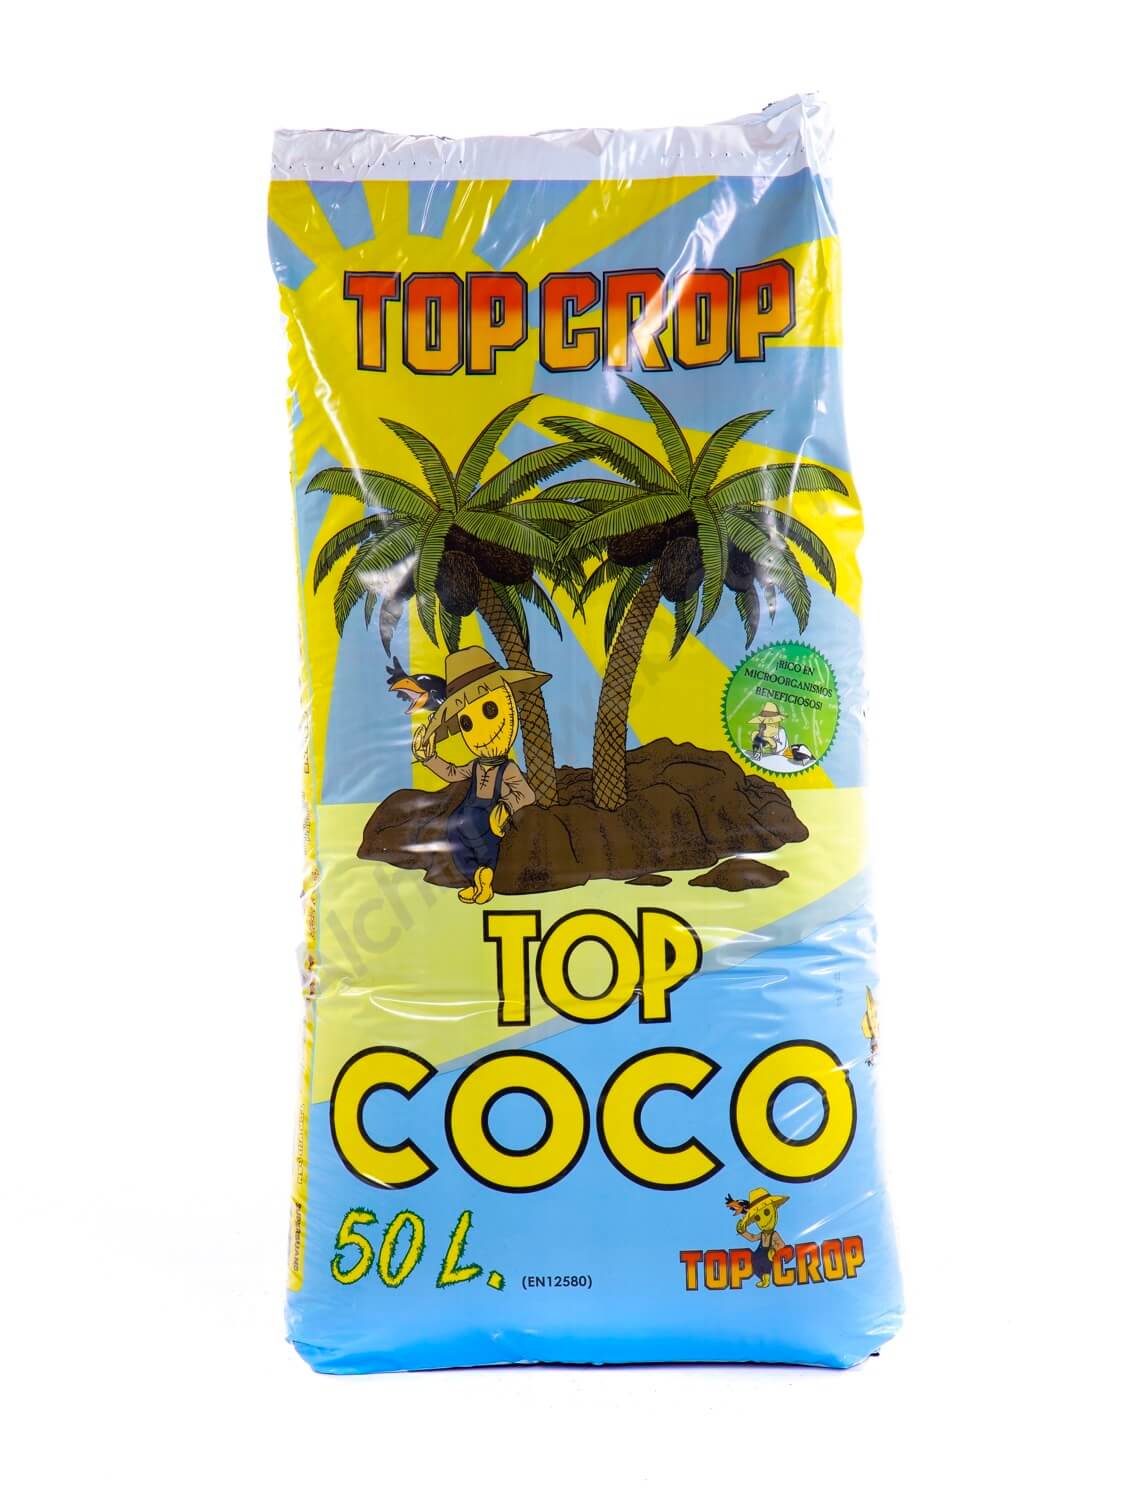 Instruir mamífero Disfraz Sale of Top Crop Top Coco